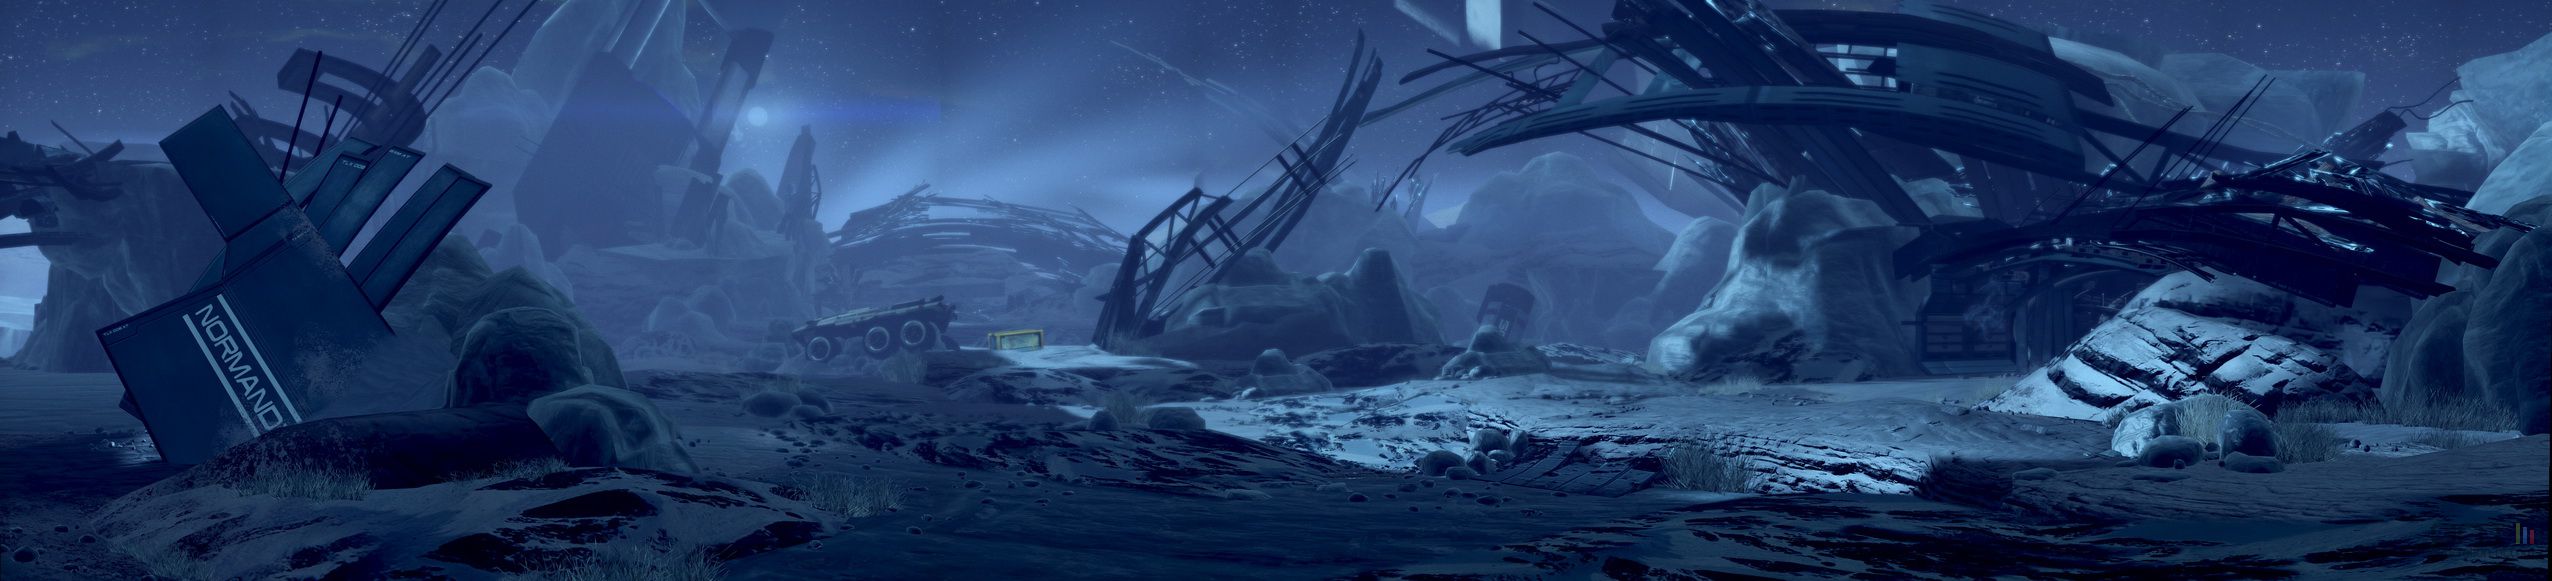 Mass Effect 2 - Image 109